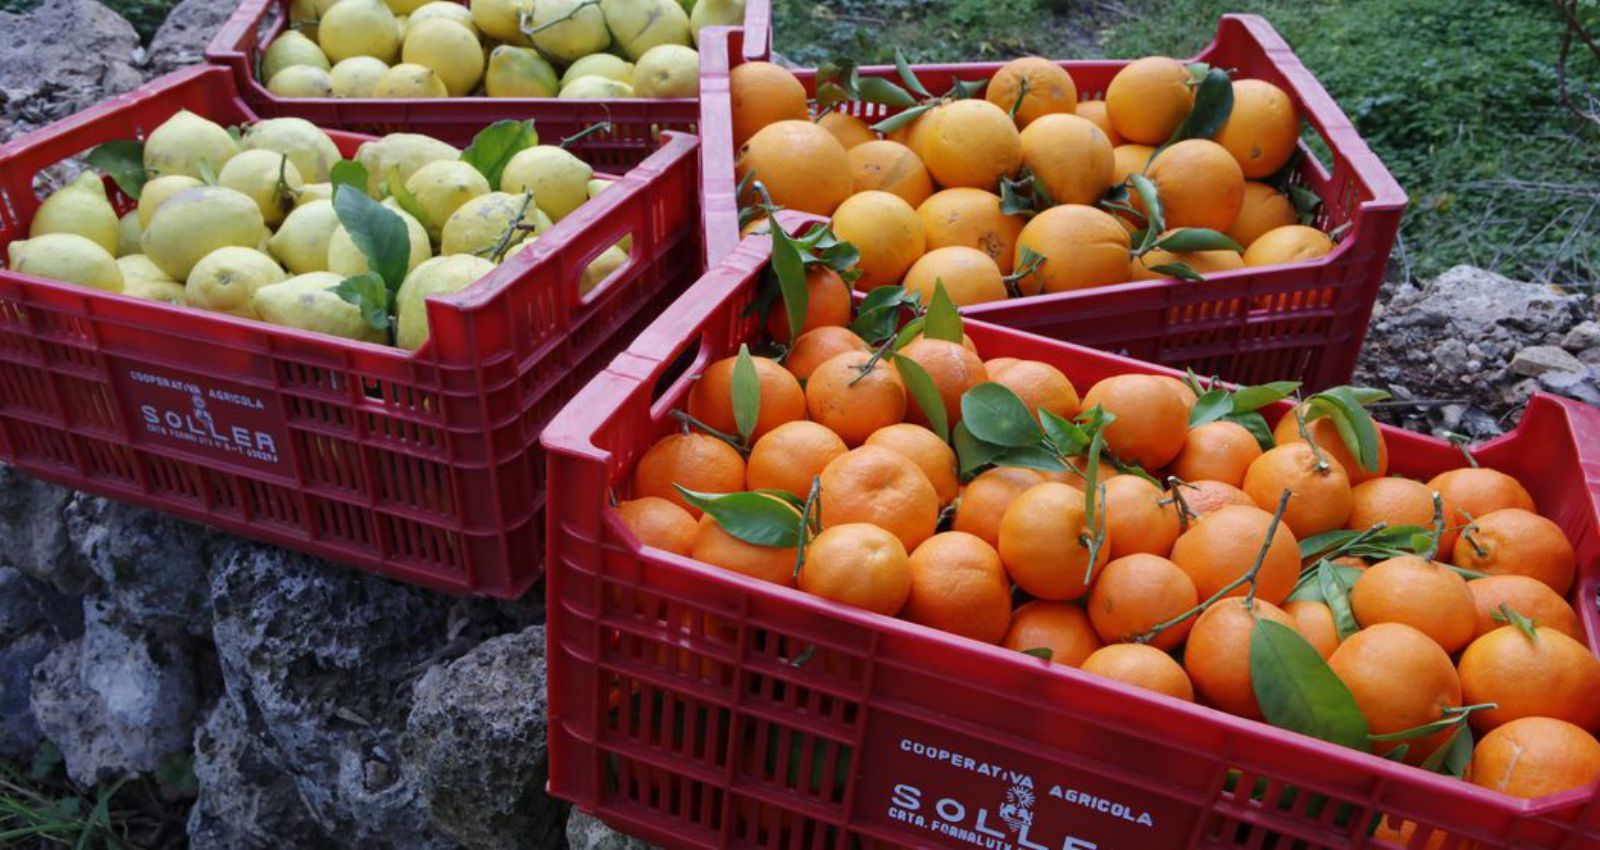 Oliver baut jedes Jahr tonnenweise Orangen, Zitronen und Mandarinen auf Mallorca an.